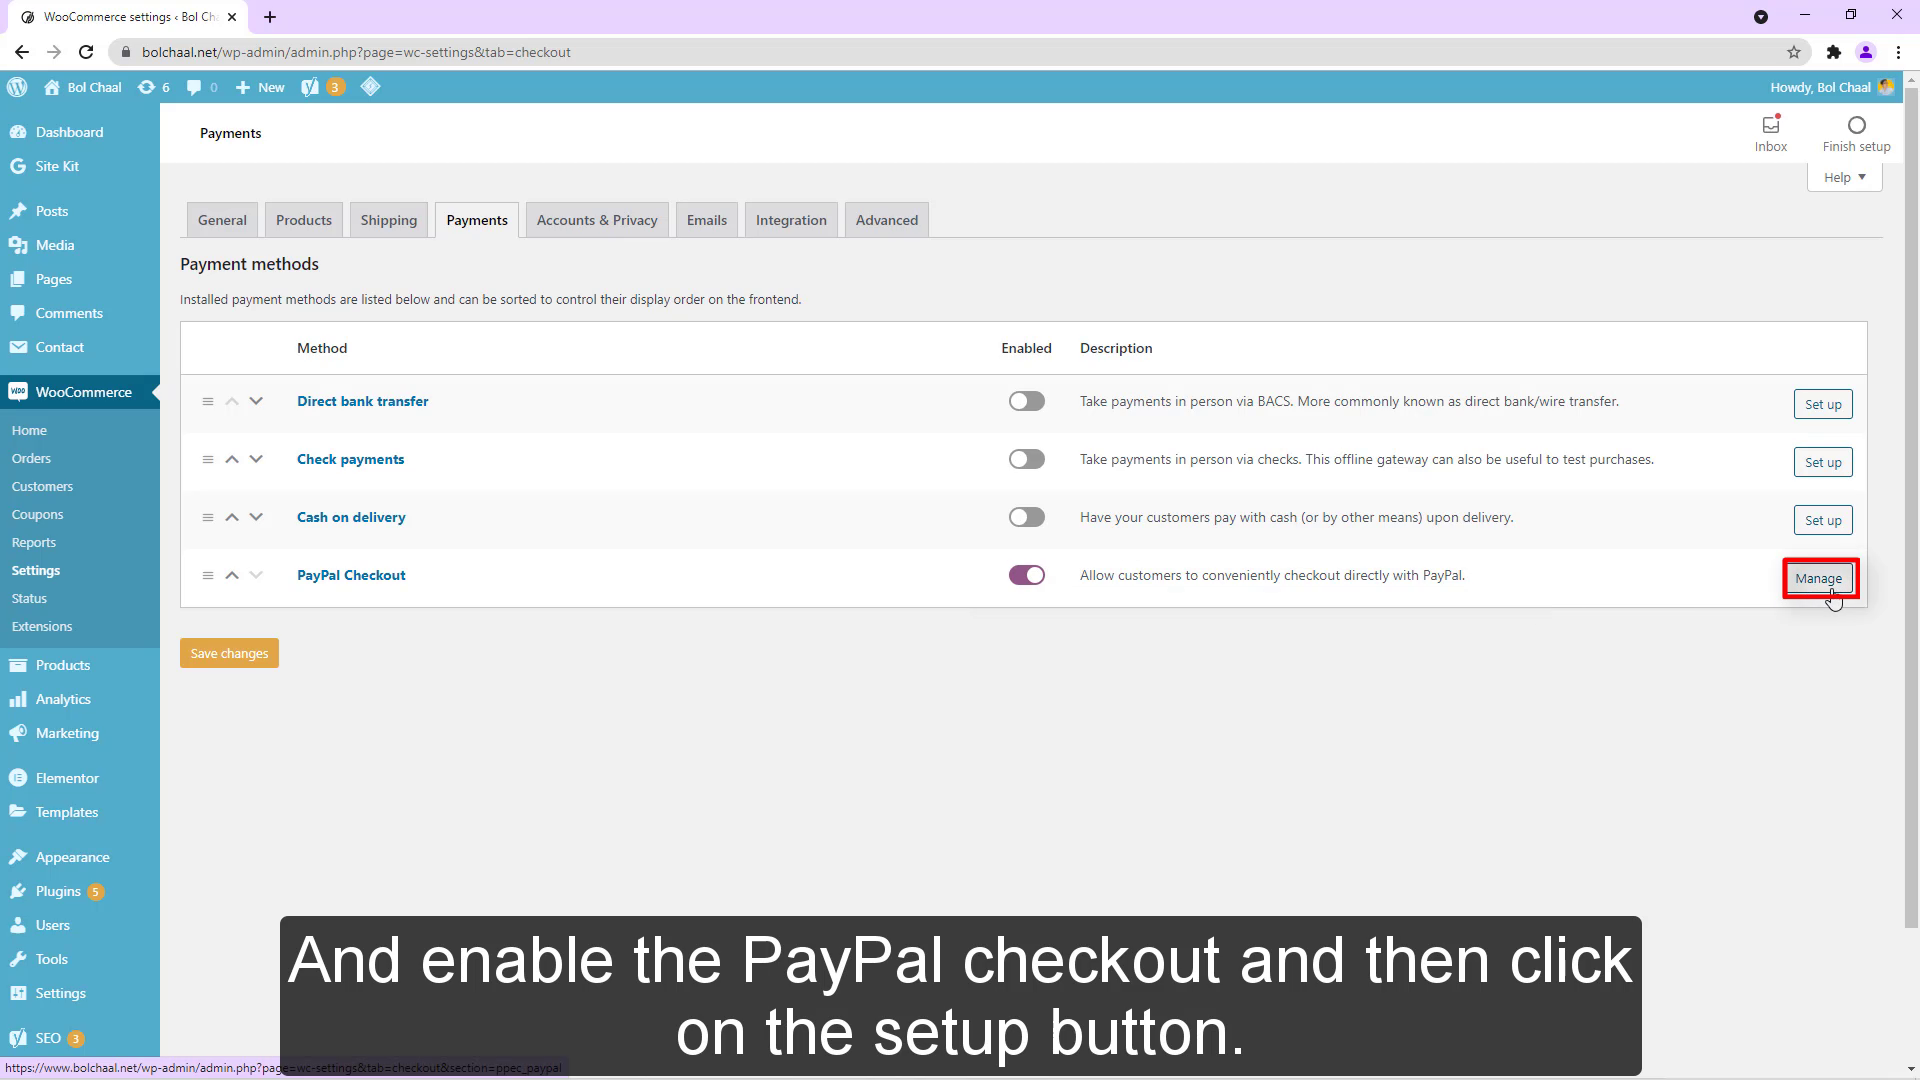 Y habilite el pago de PayPal y luego haga clic en el botón de configuración.